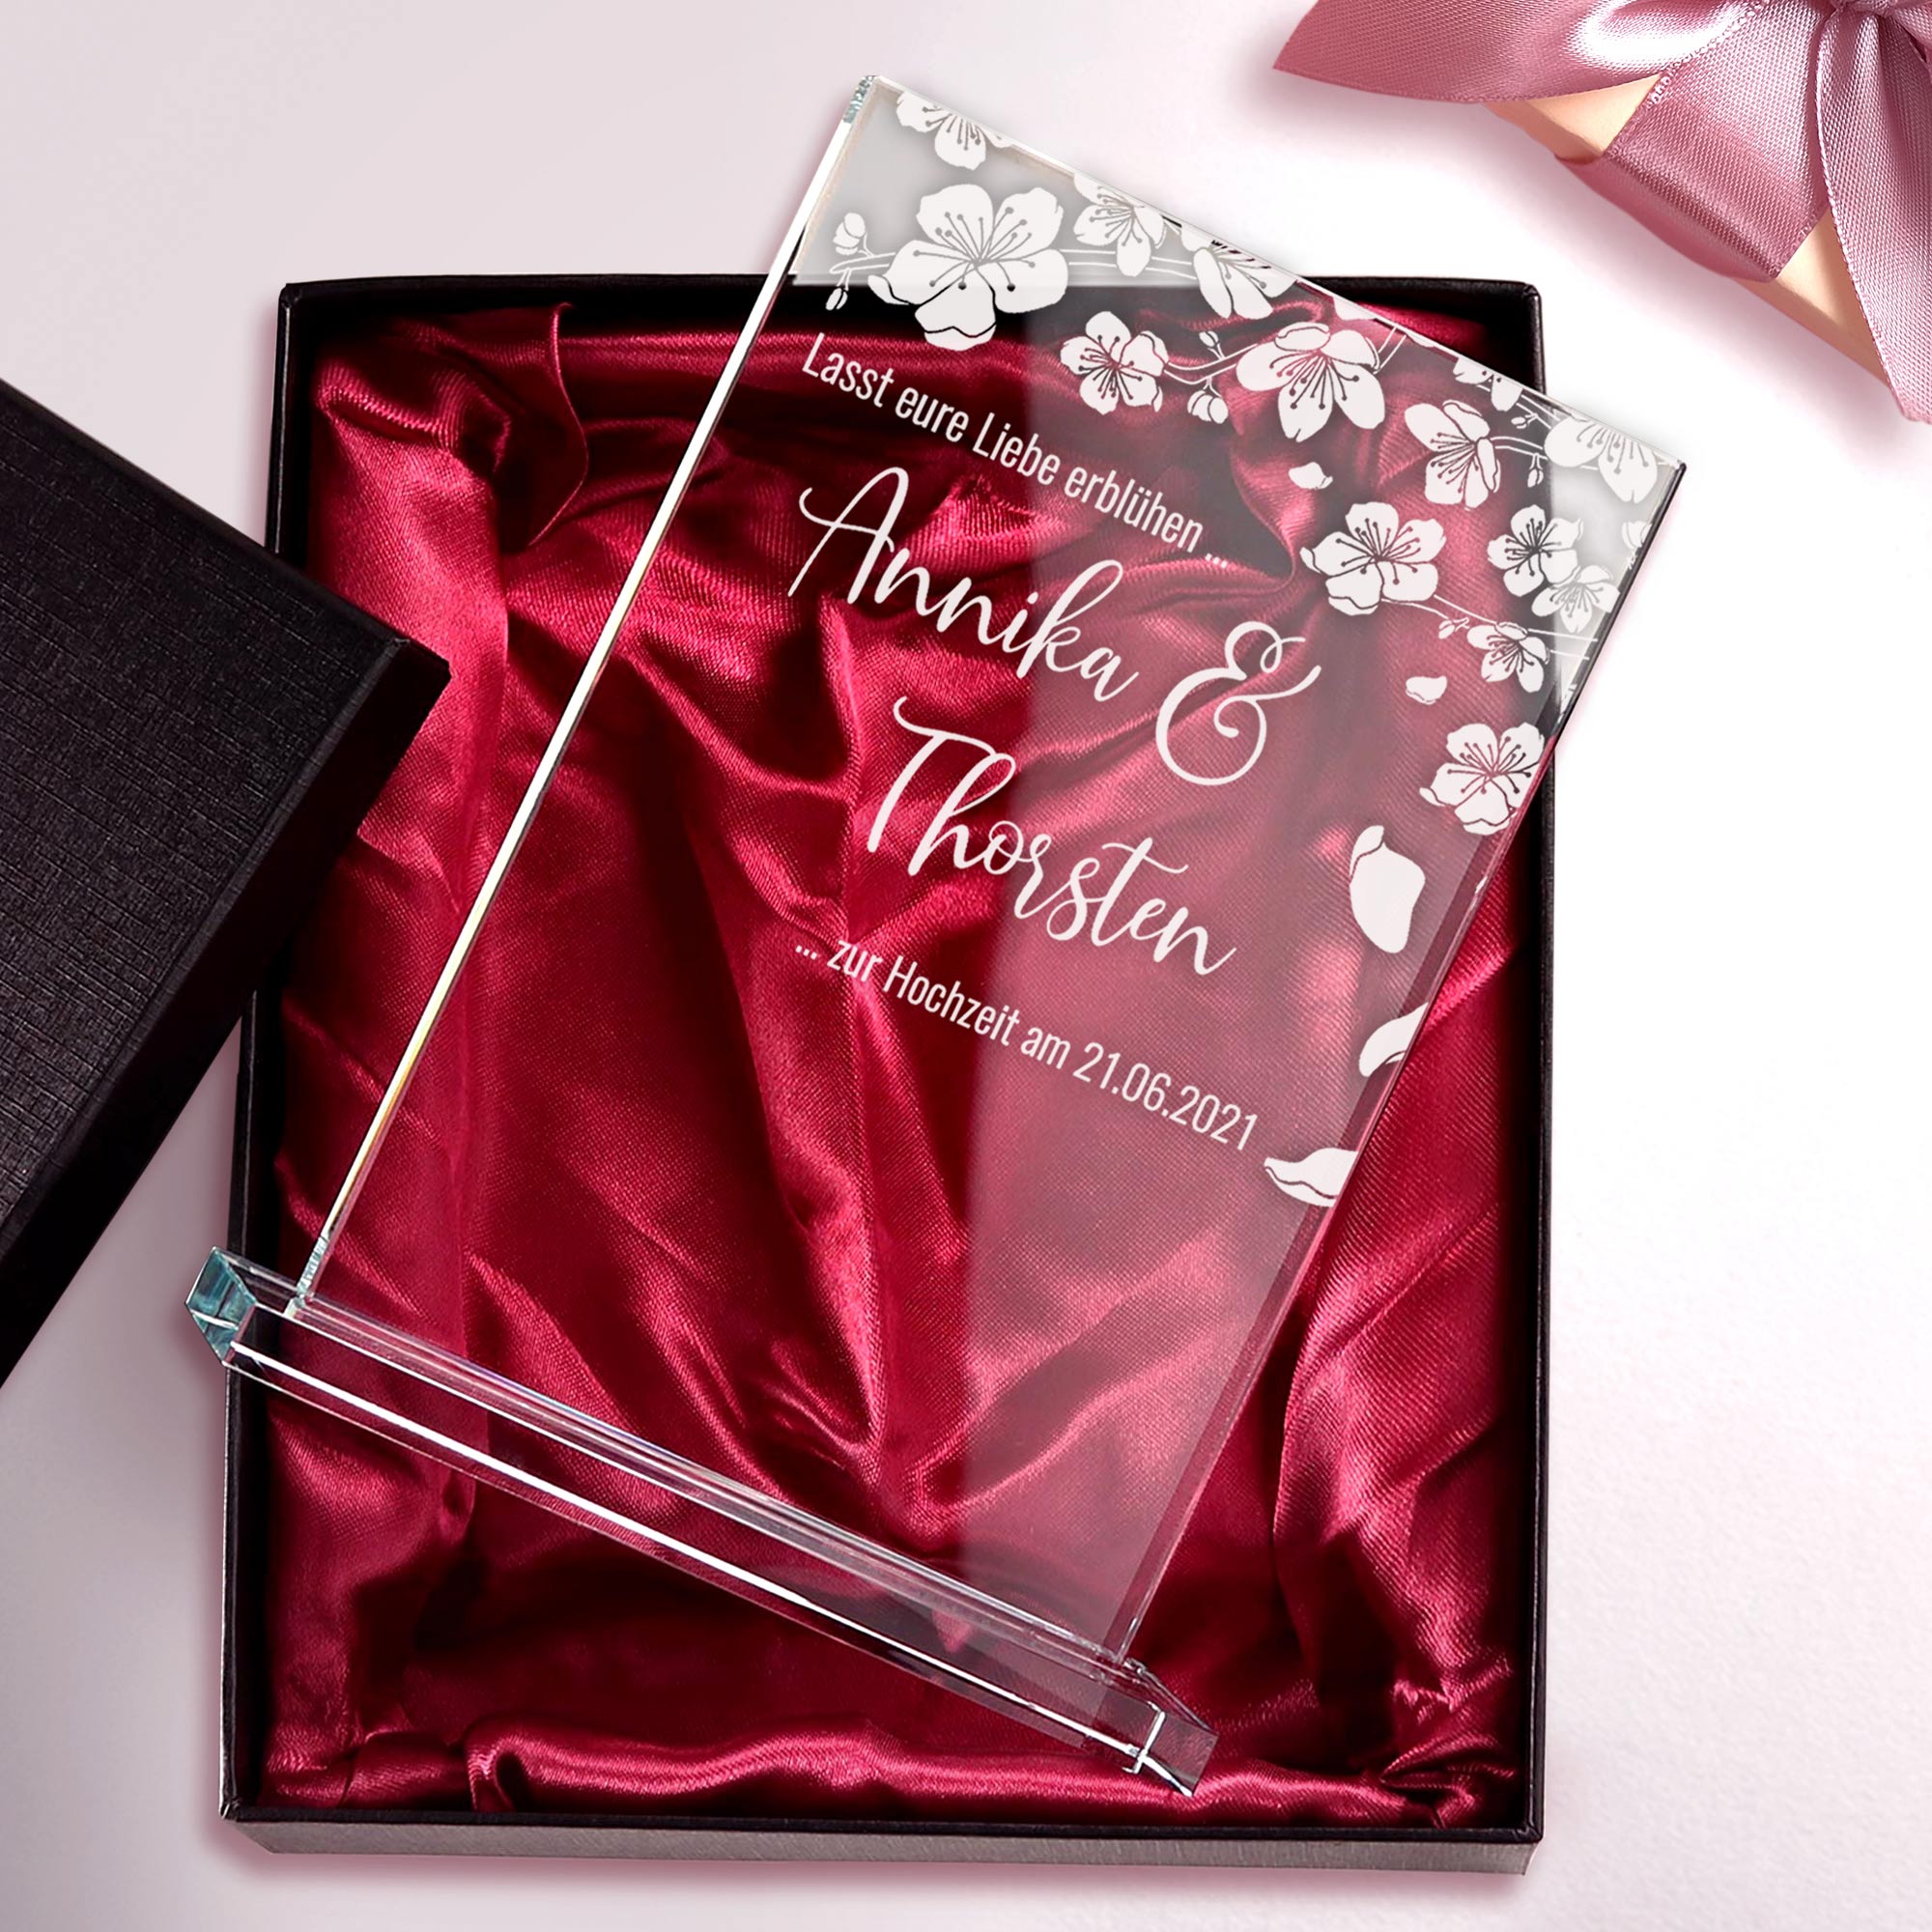 Der individuell personalisierte Glas Pokal mit Gravur - Blühende Liebe ist Auszeichnung aus Glas und Pärchengeschenk oder Geschenk zum Jahrestag